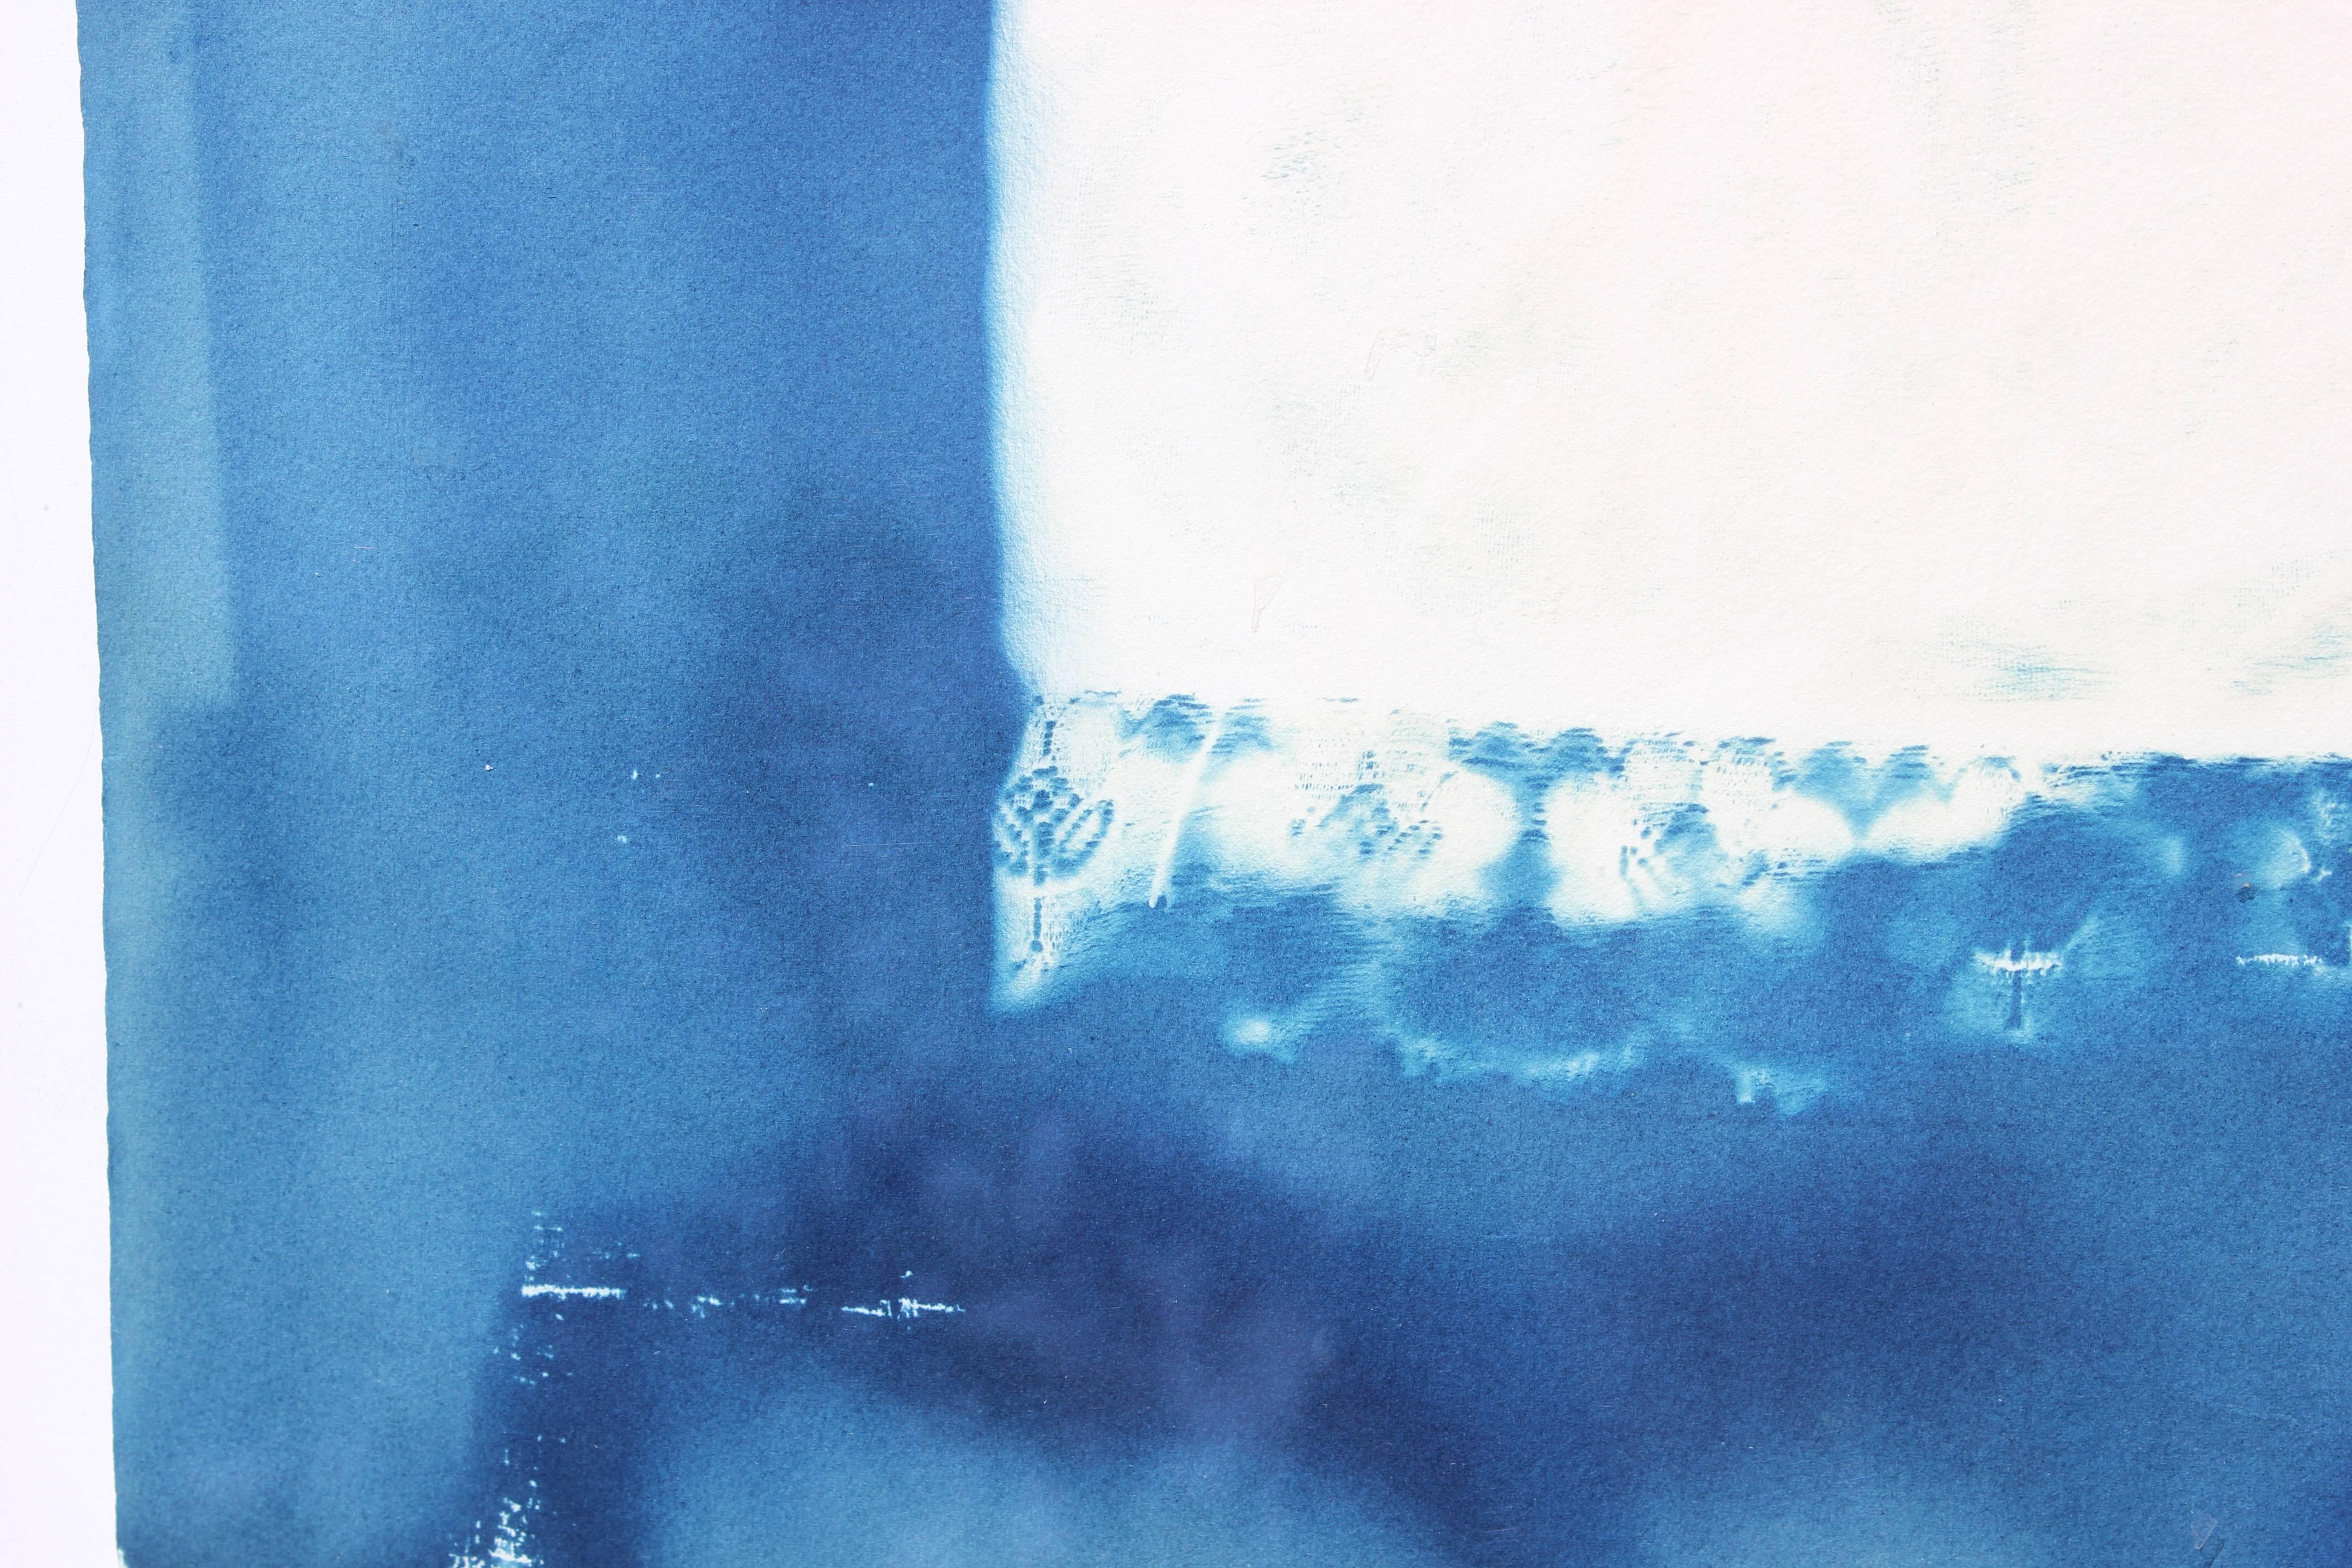 photogram cyanotype